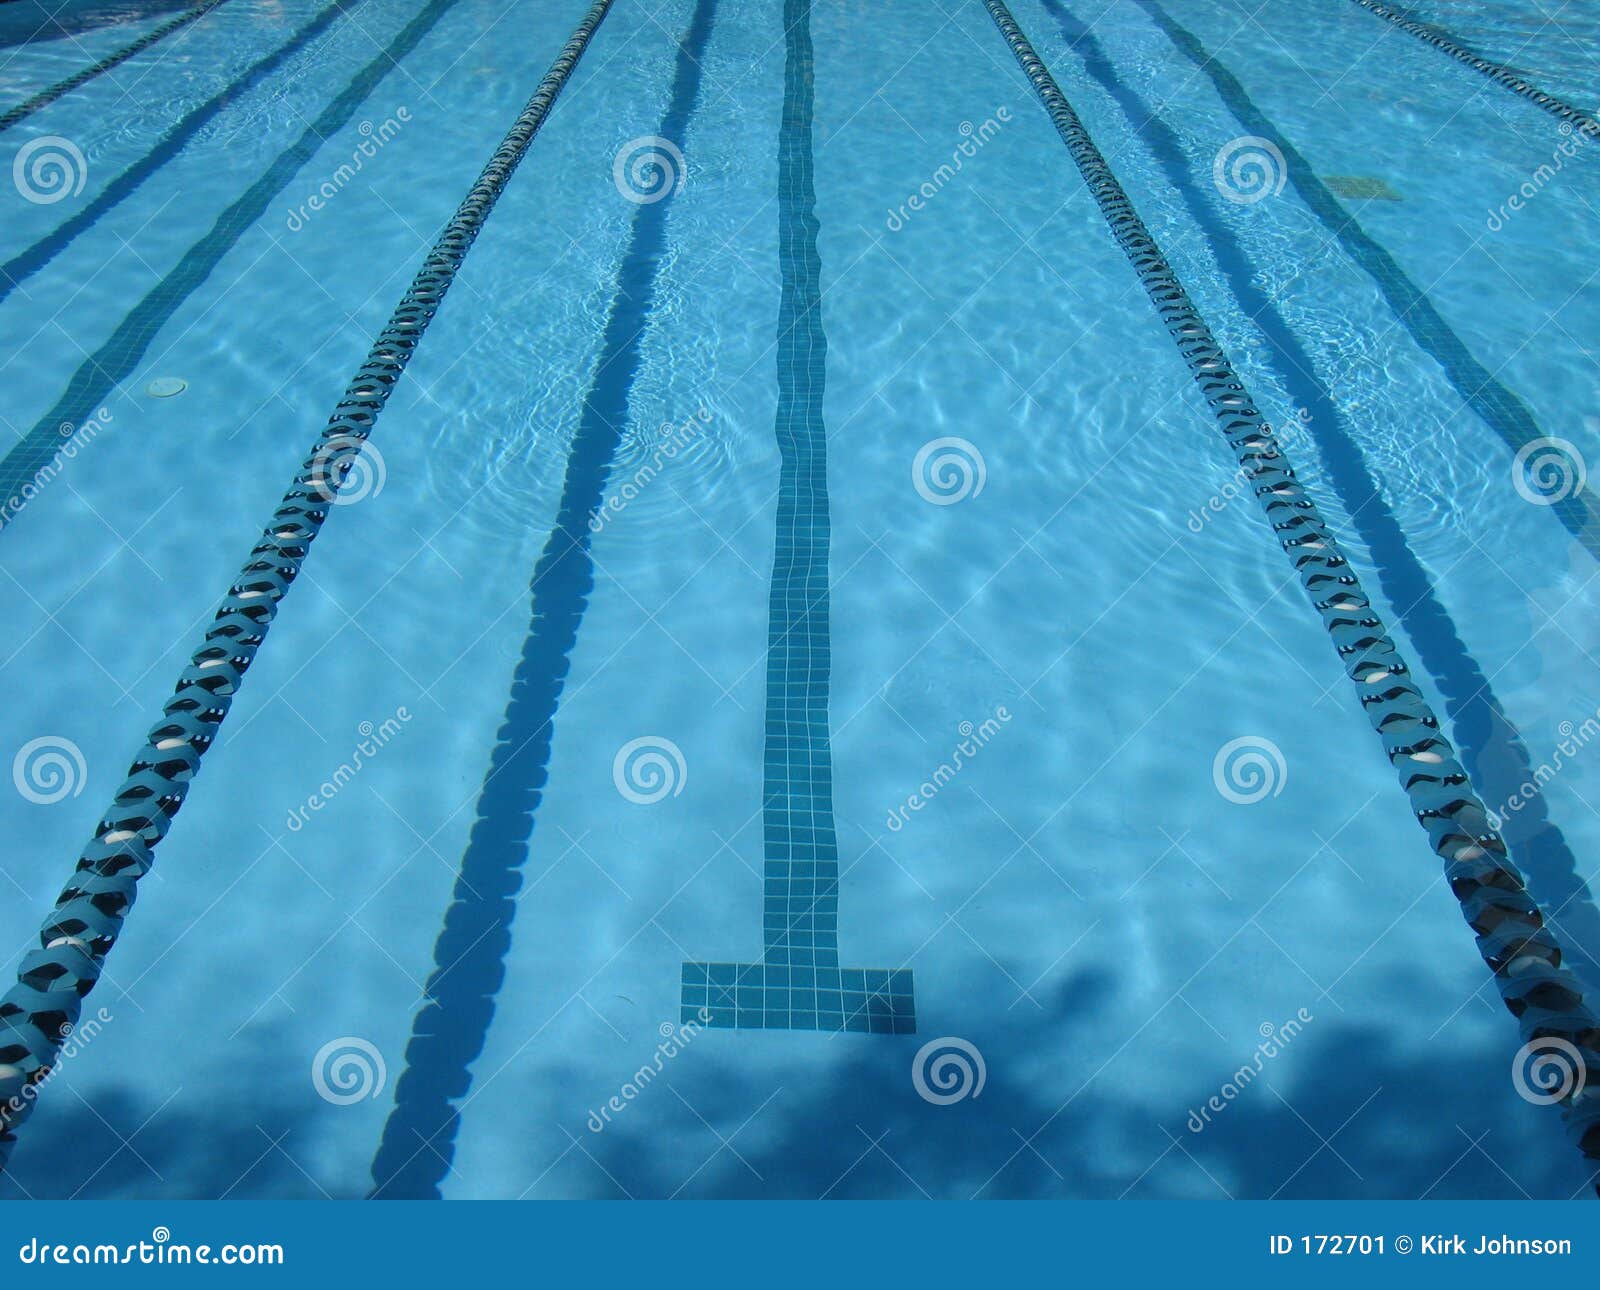 Swimming Pool Lap Lanes Stock Image - Image: 172701